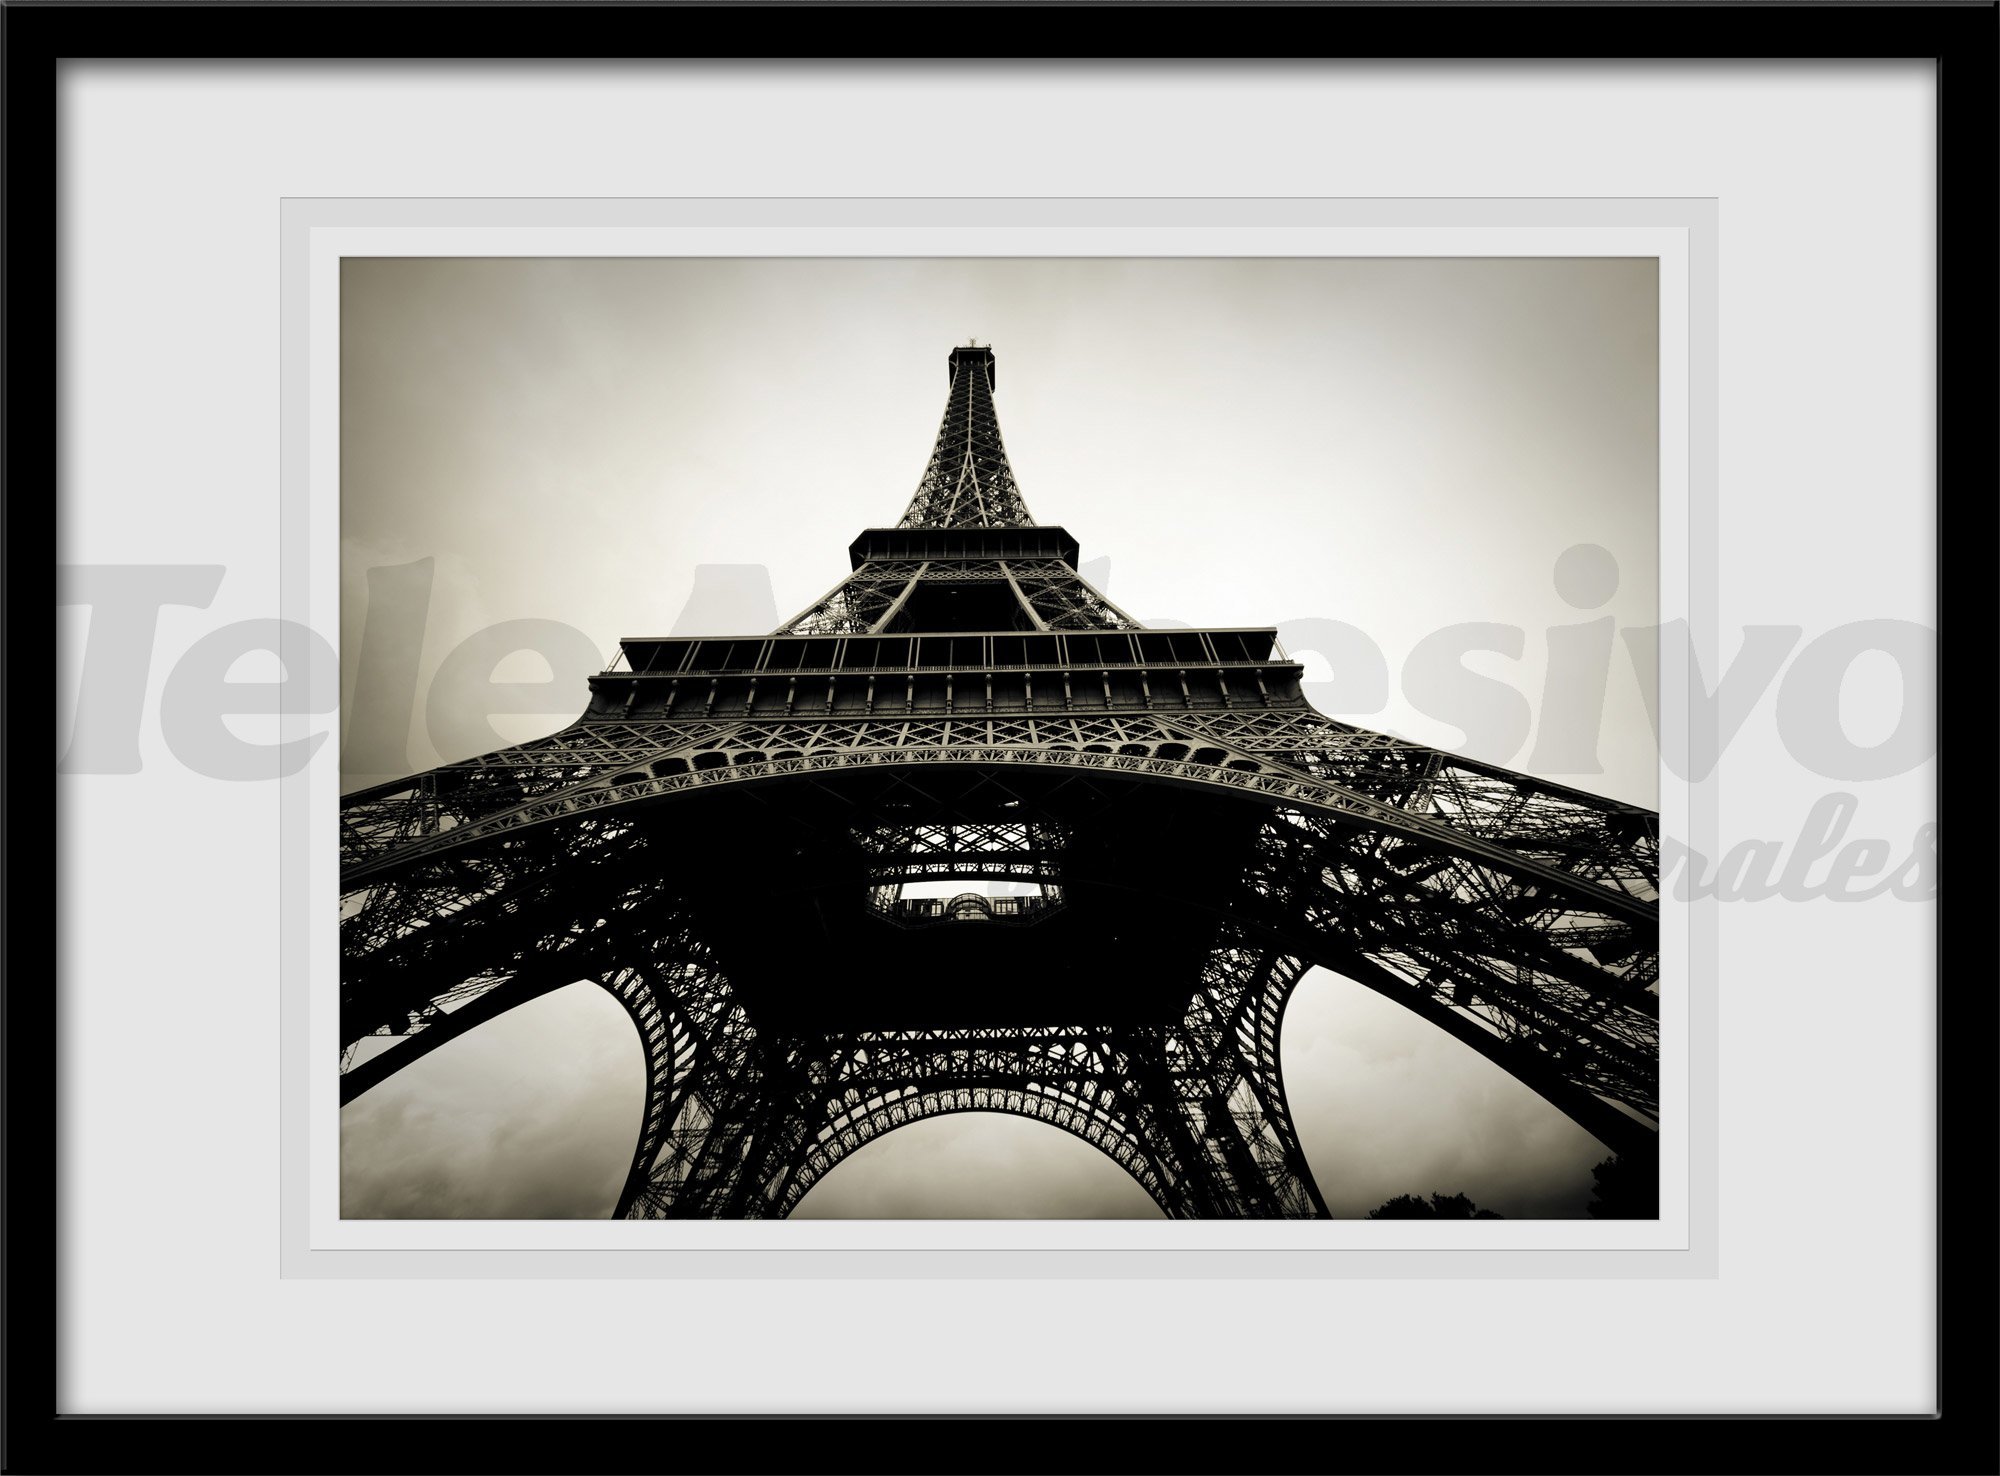 Vinilos decorativos cuadro de fotografía Torre Eiffel en blanco y negro